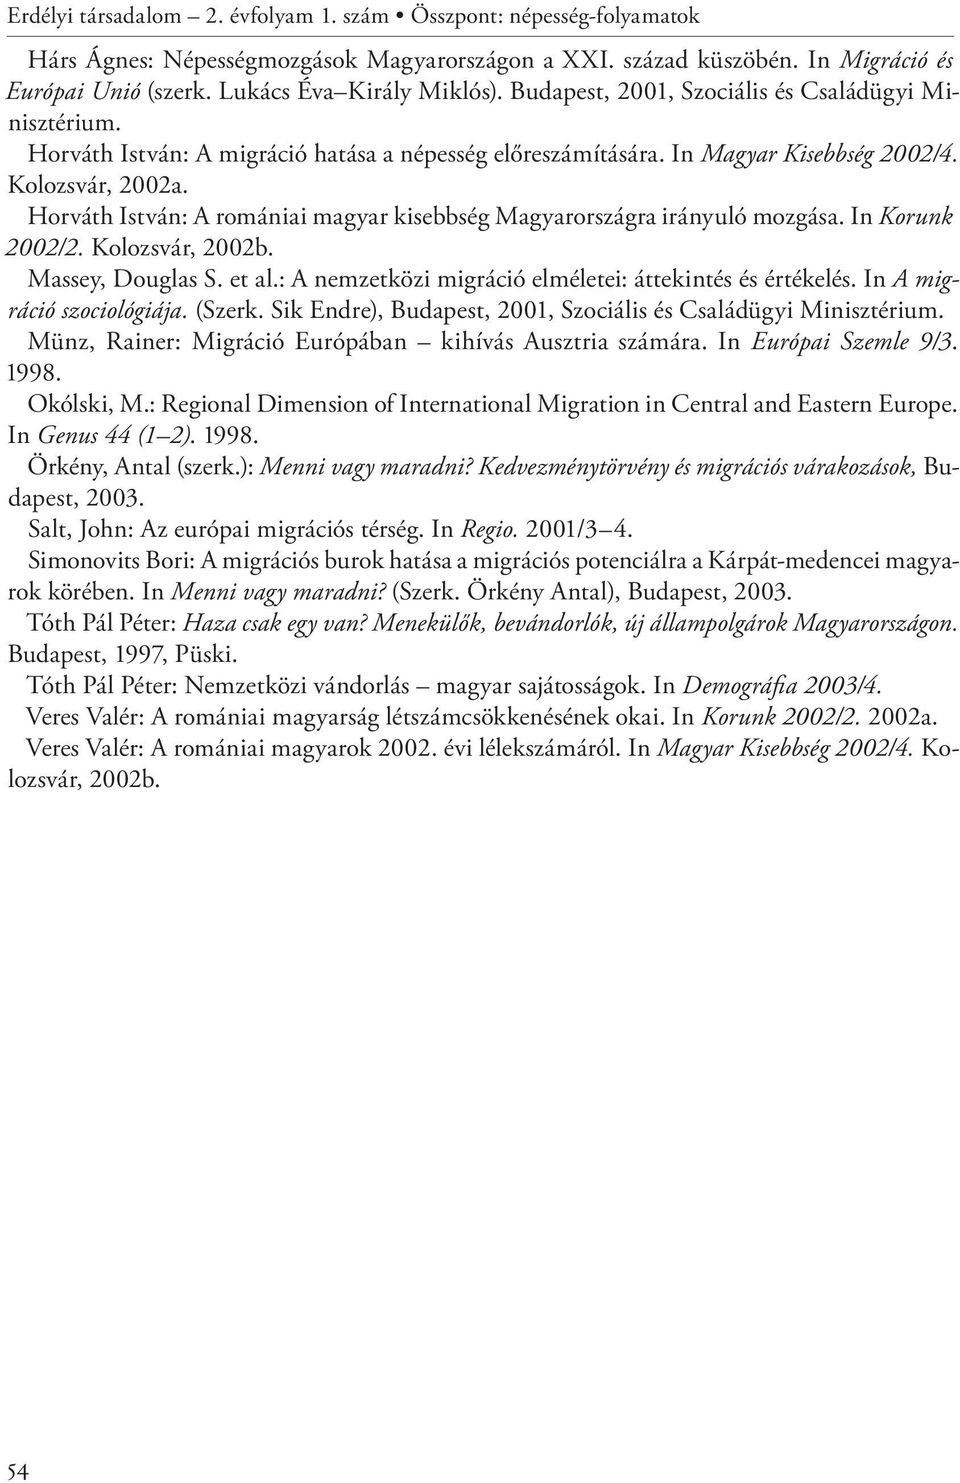 Horváth István: A romániai magyar kisebbség Magyarországra irányuló mozgása. In Korunk 2002/2. Kolozsvár, 2002b. Massey, Douglas S. et al.: A nemzetközi migráció elméletei: áttekintés és értékelés.